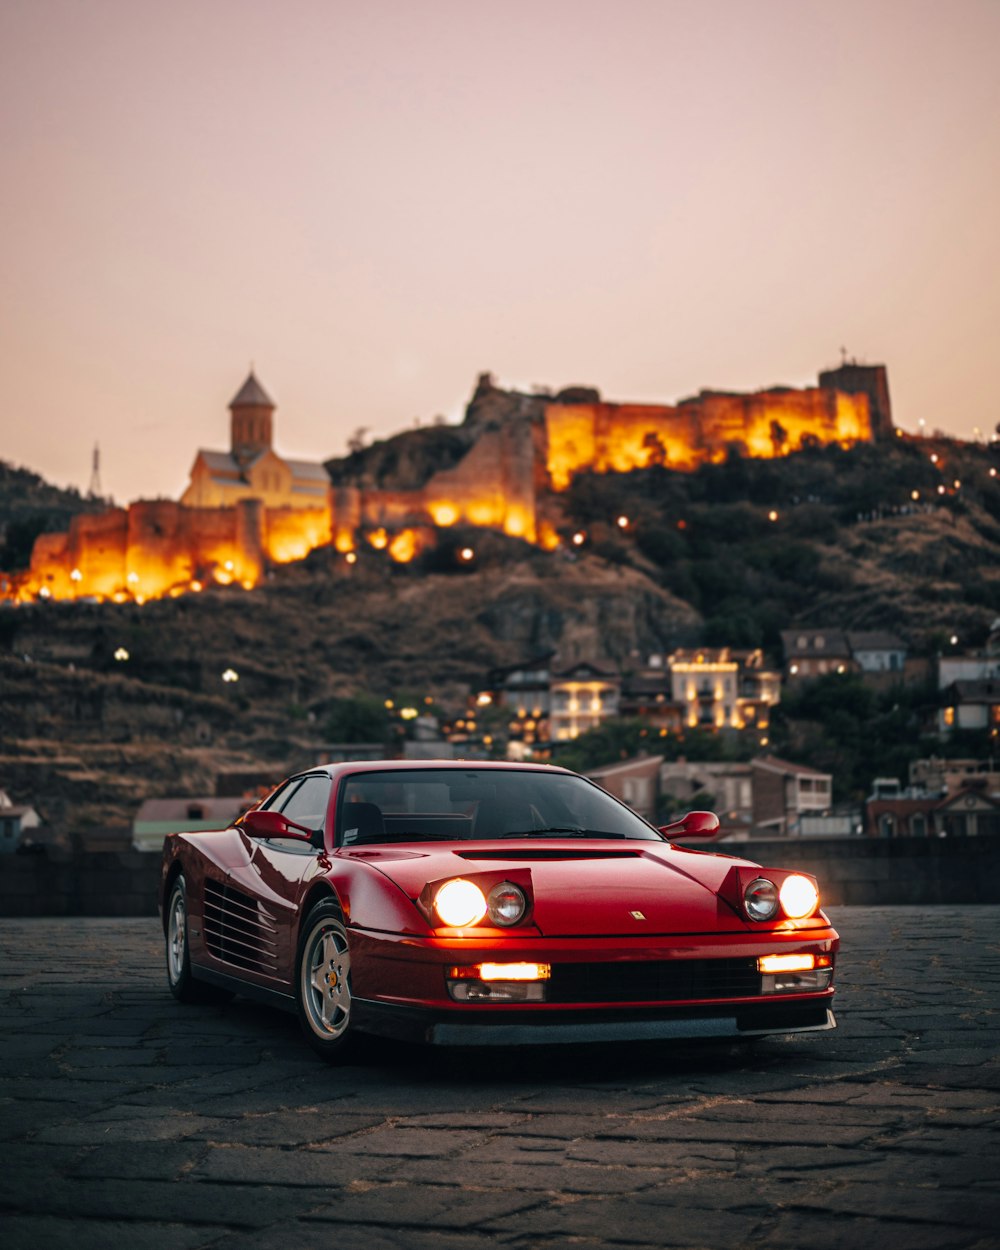 Un coche deportivo rojo aparcado frente a un castillo